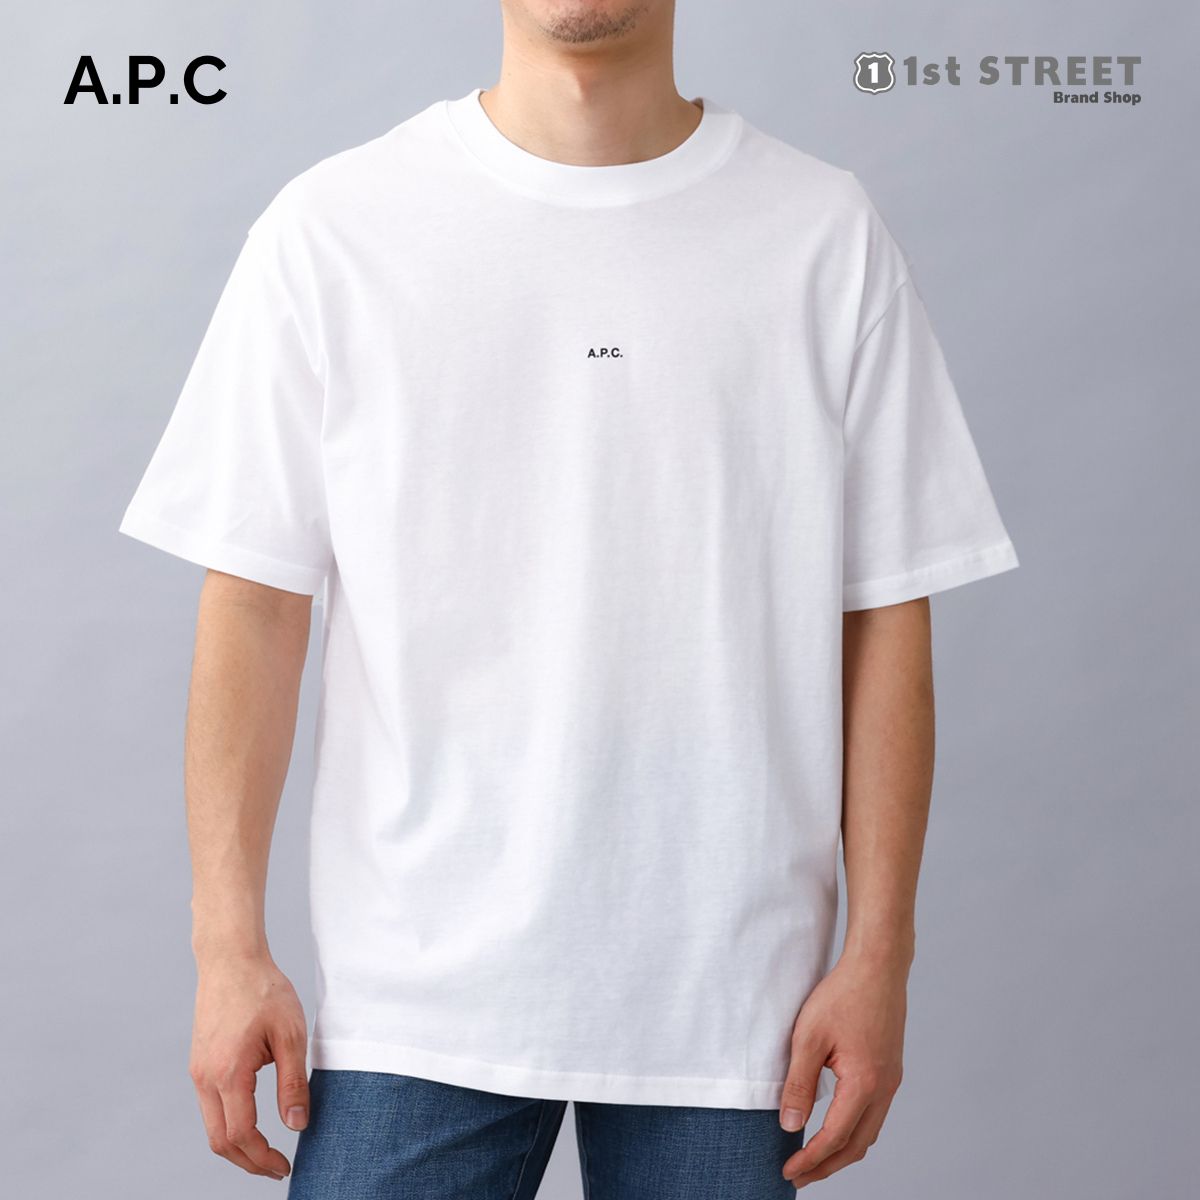 アーペーセー プレゼント メンズ アーペーセー A.P.C. メンズTシャツ Tシャツ コットン ロゴ クルーネック ホワイト H26929 COEIO AAB T-SHIRT KYLE WHITE メンズ